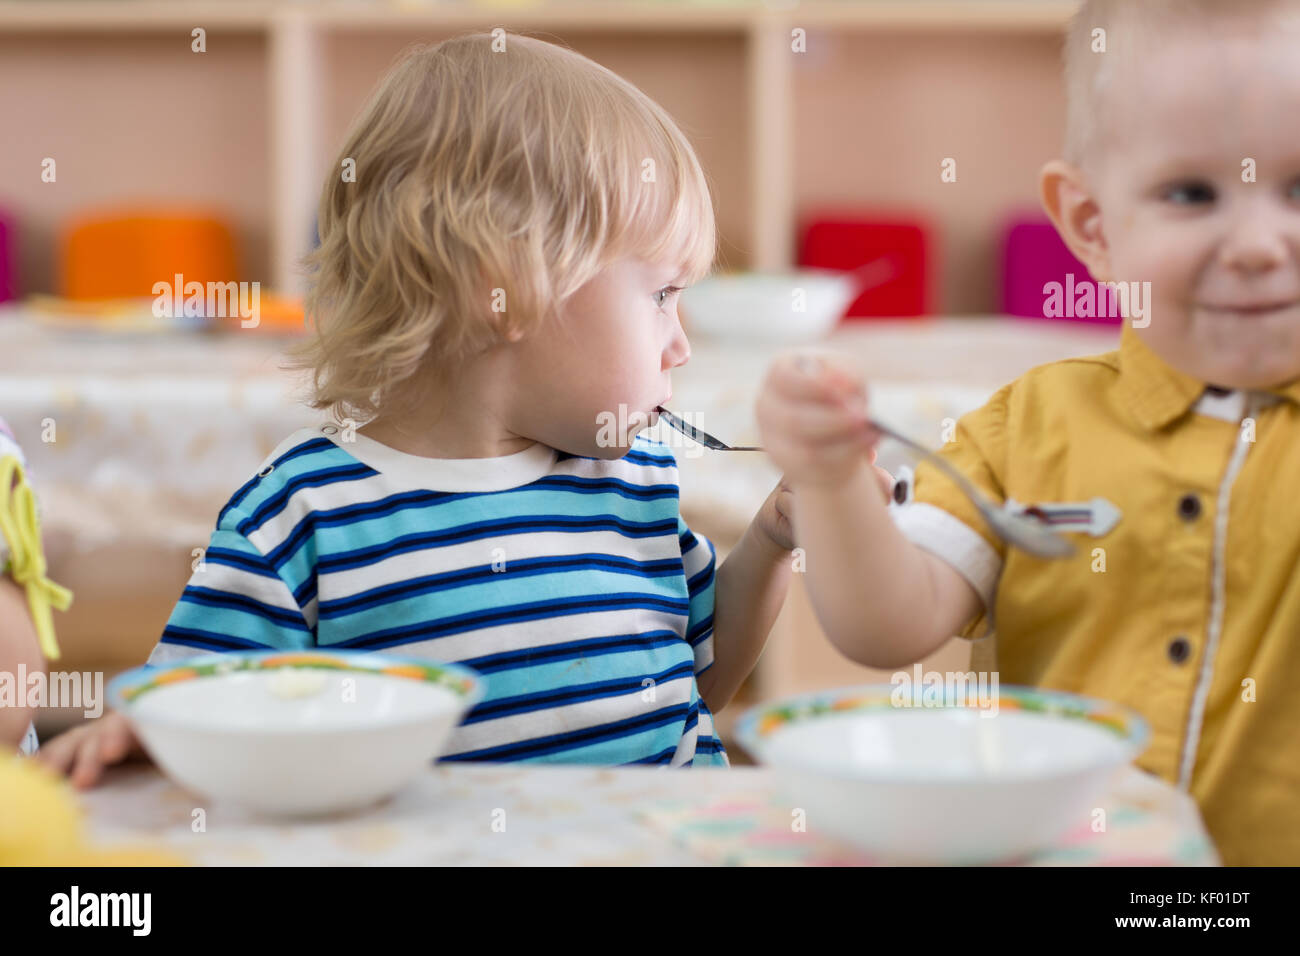 Kids eating in kindergarten Stock Photo